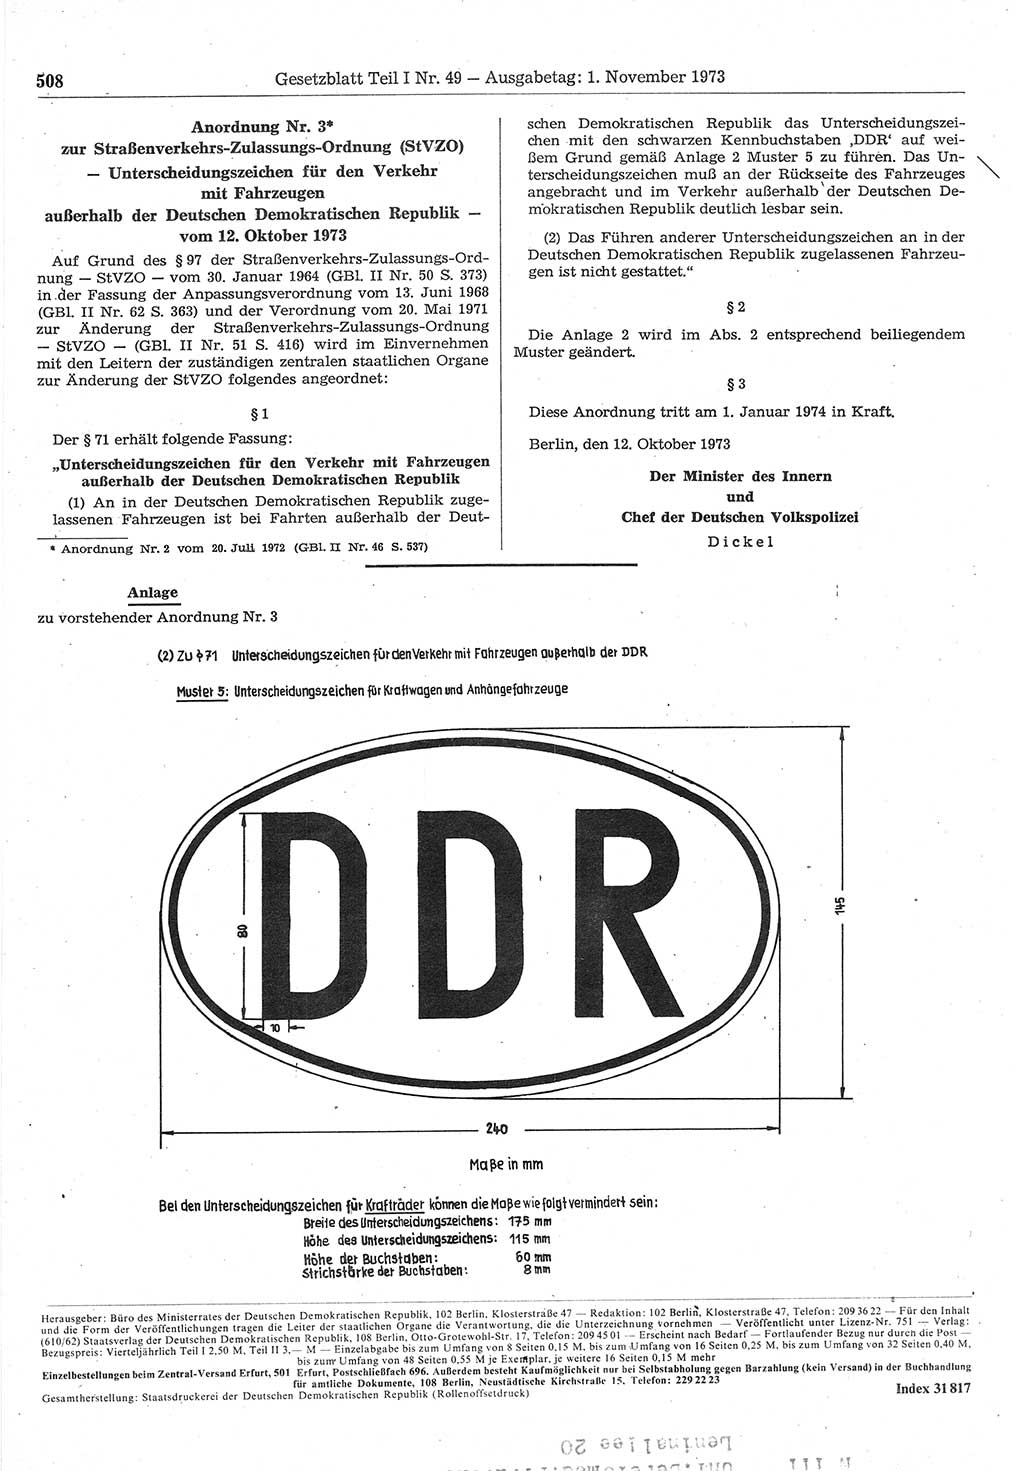 Gesetzblatt (GBl.) der Deutschen Demokratischen Republik (DDR) Teil Ⅰ 1973, Seite 508 (GBl. DDR Ⅰ 1973, S. 508)